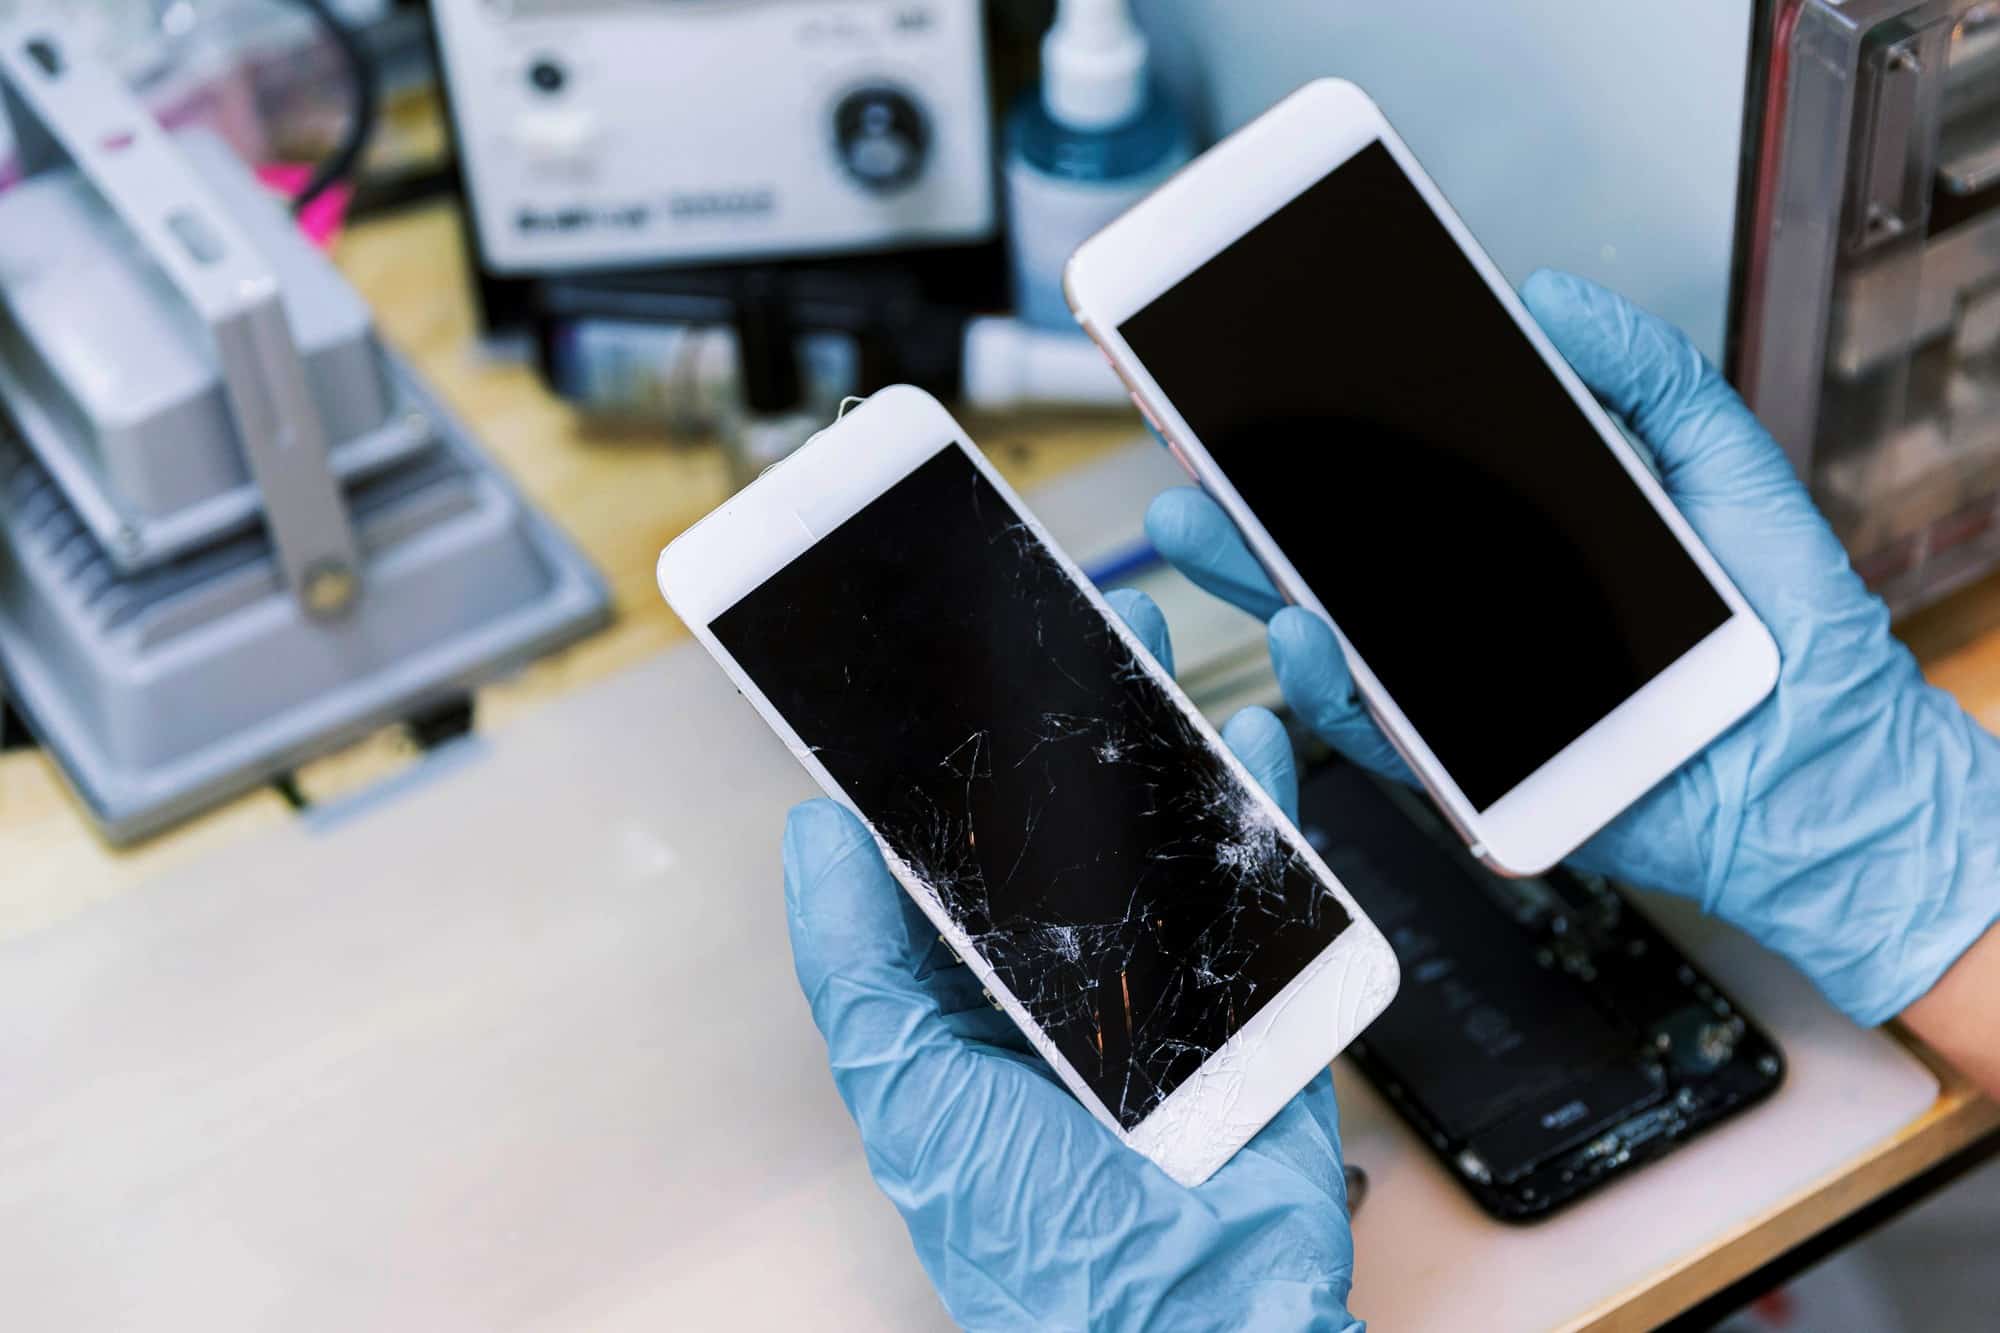 תיקון מסך זול של אייפון 5 הוא אופציה משתלמת למי שרוצה לתקן את המכשיר שלו מבלי להוציא יותר מדי כסף